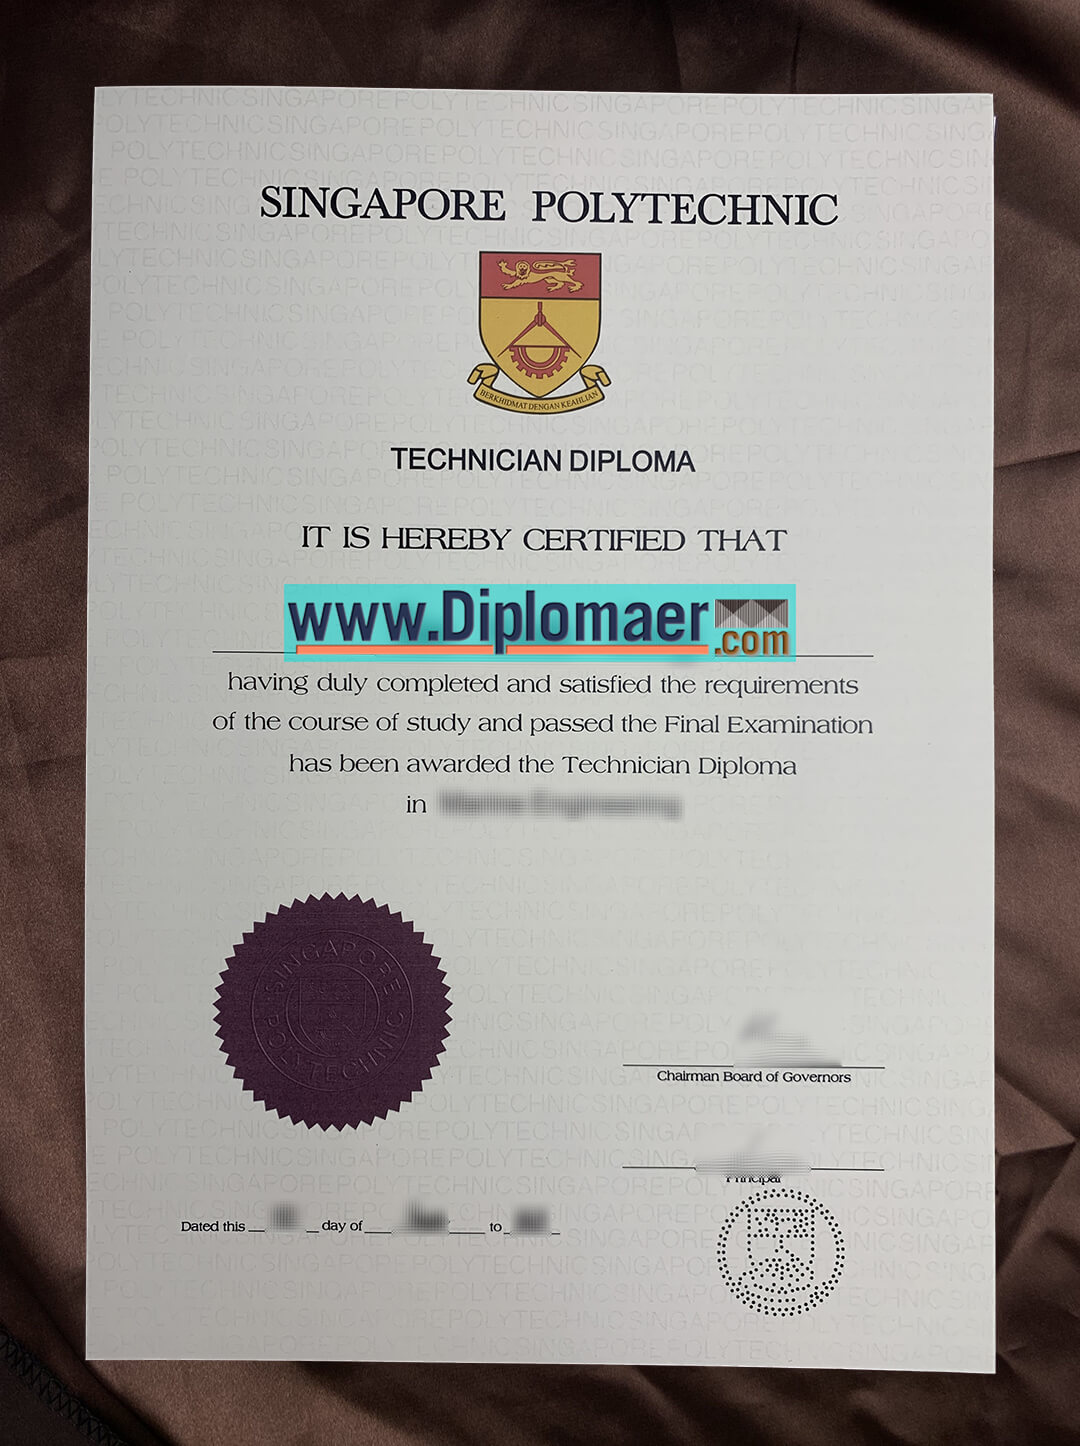 Singapore Polytechnic Fake Diploma - How to quickly get a Singapore Polytechnic fake diploma?